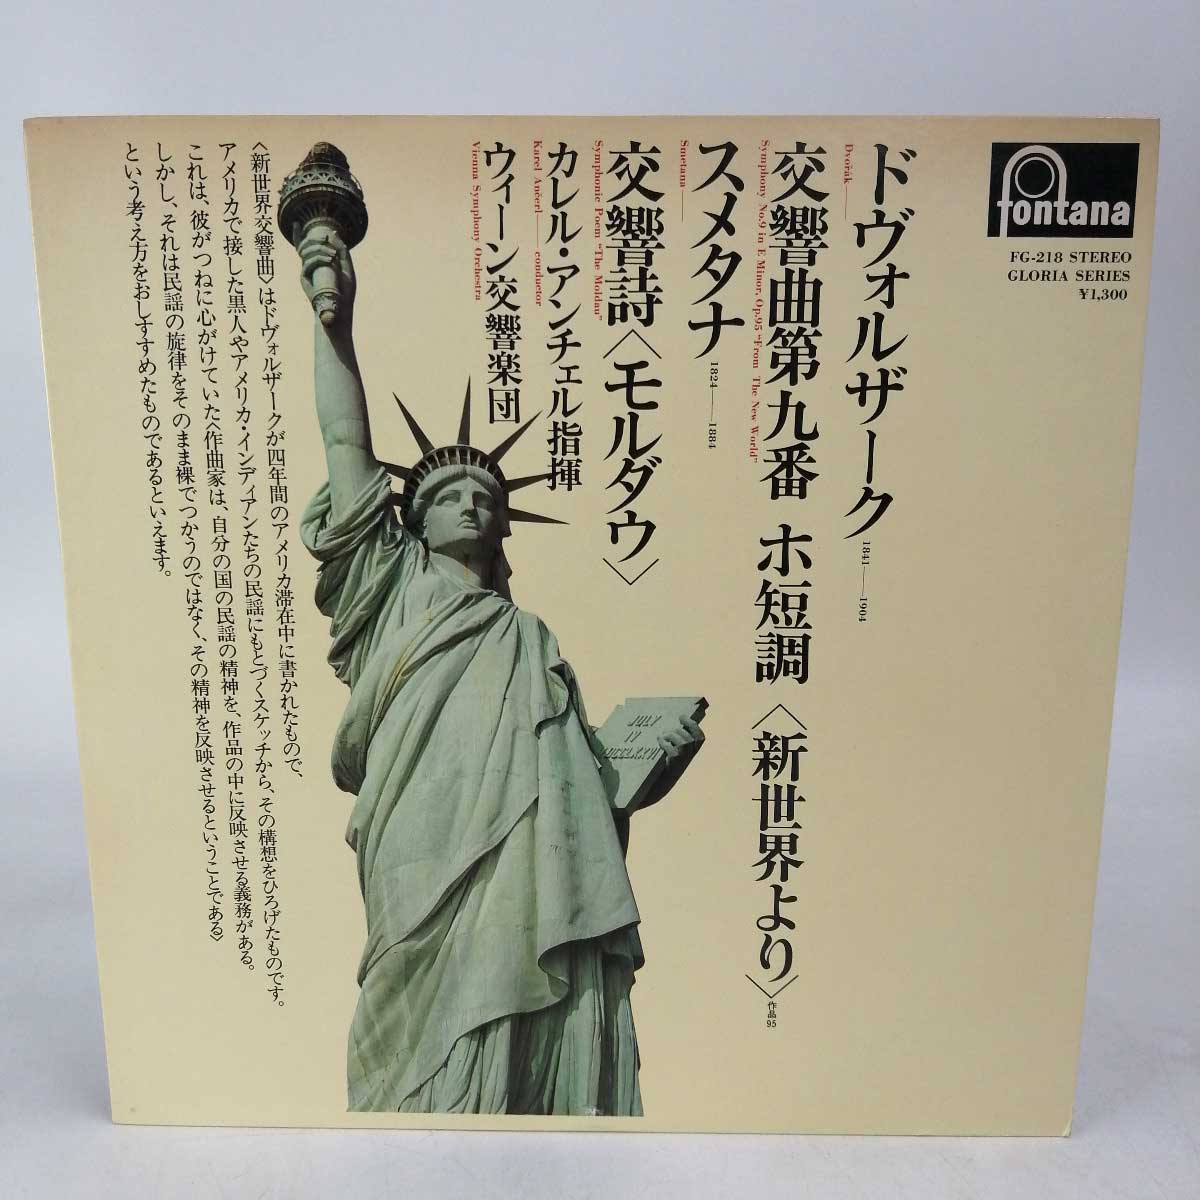 【中古】LP レコード カレル・アンチェル ドヴォルザーク 交響曲第9番 新世界より